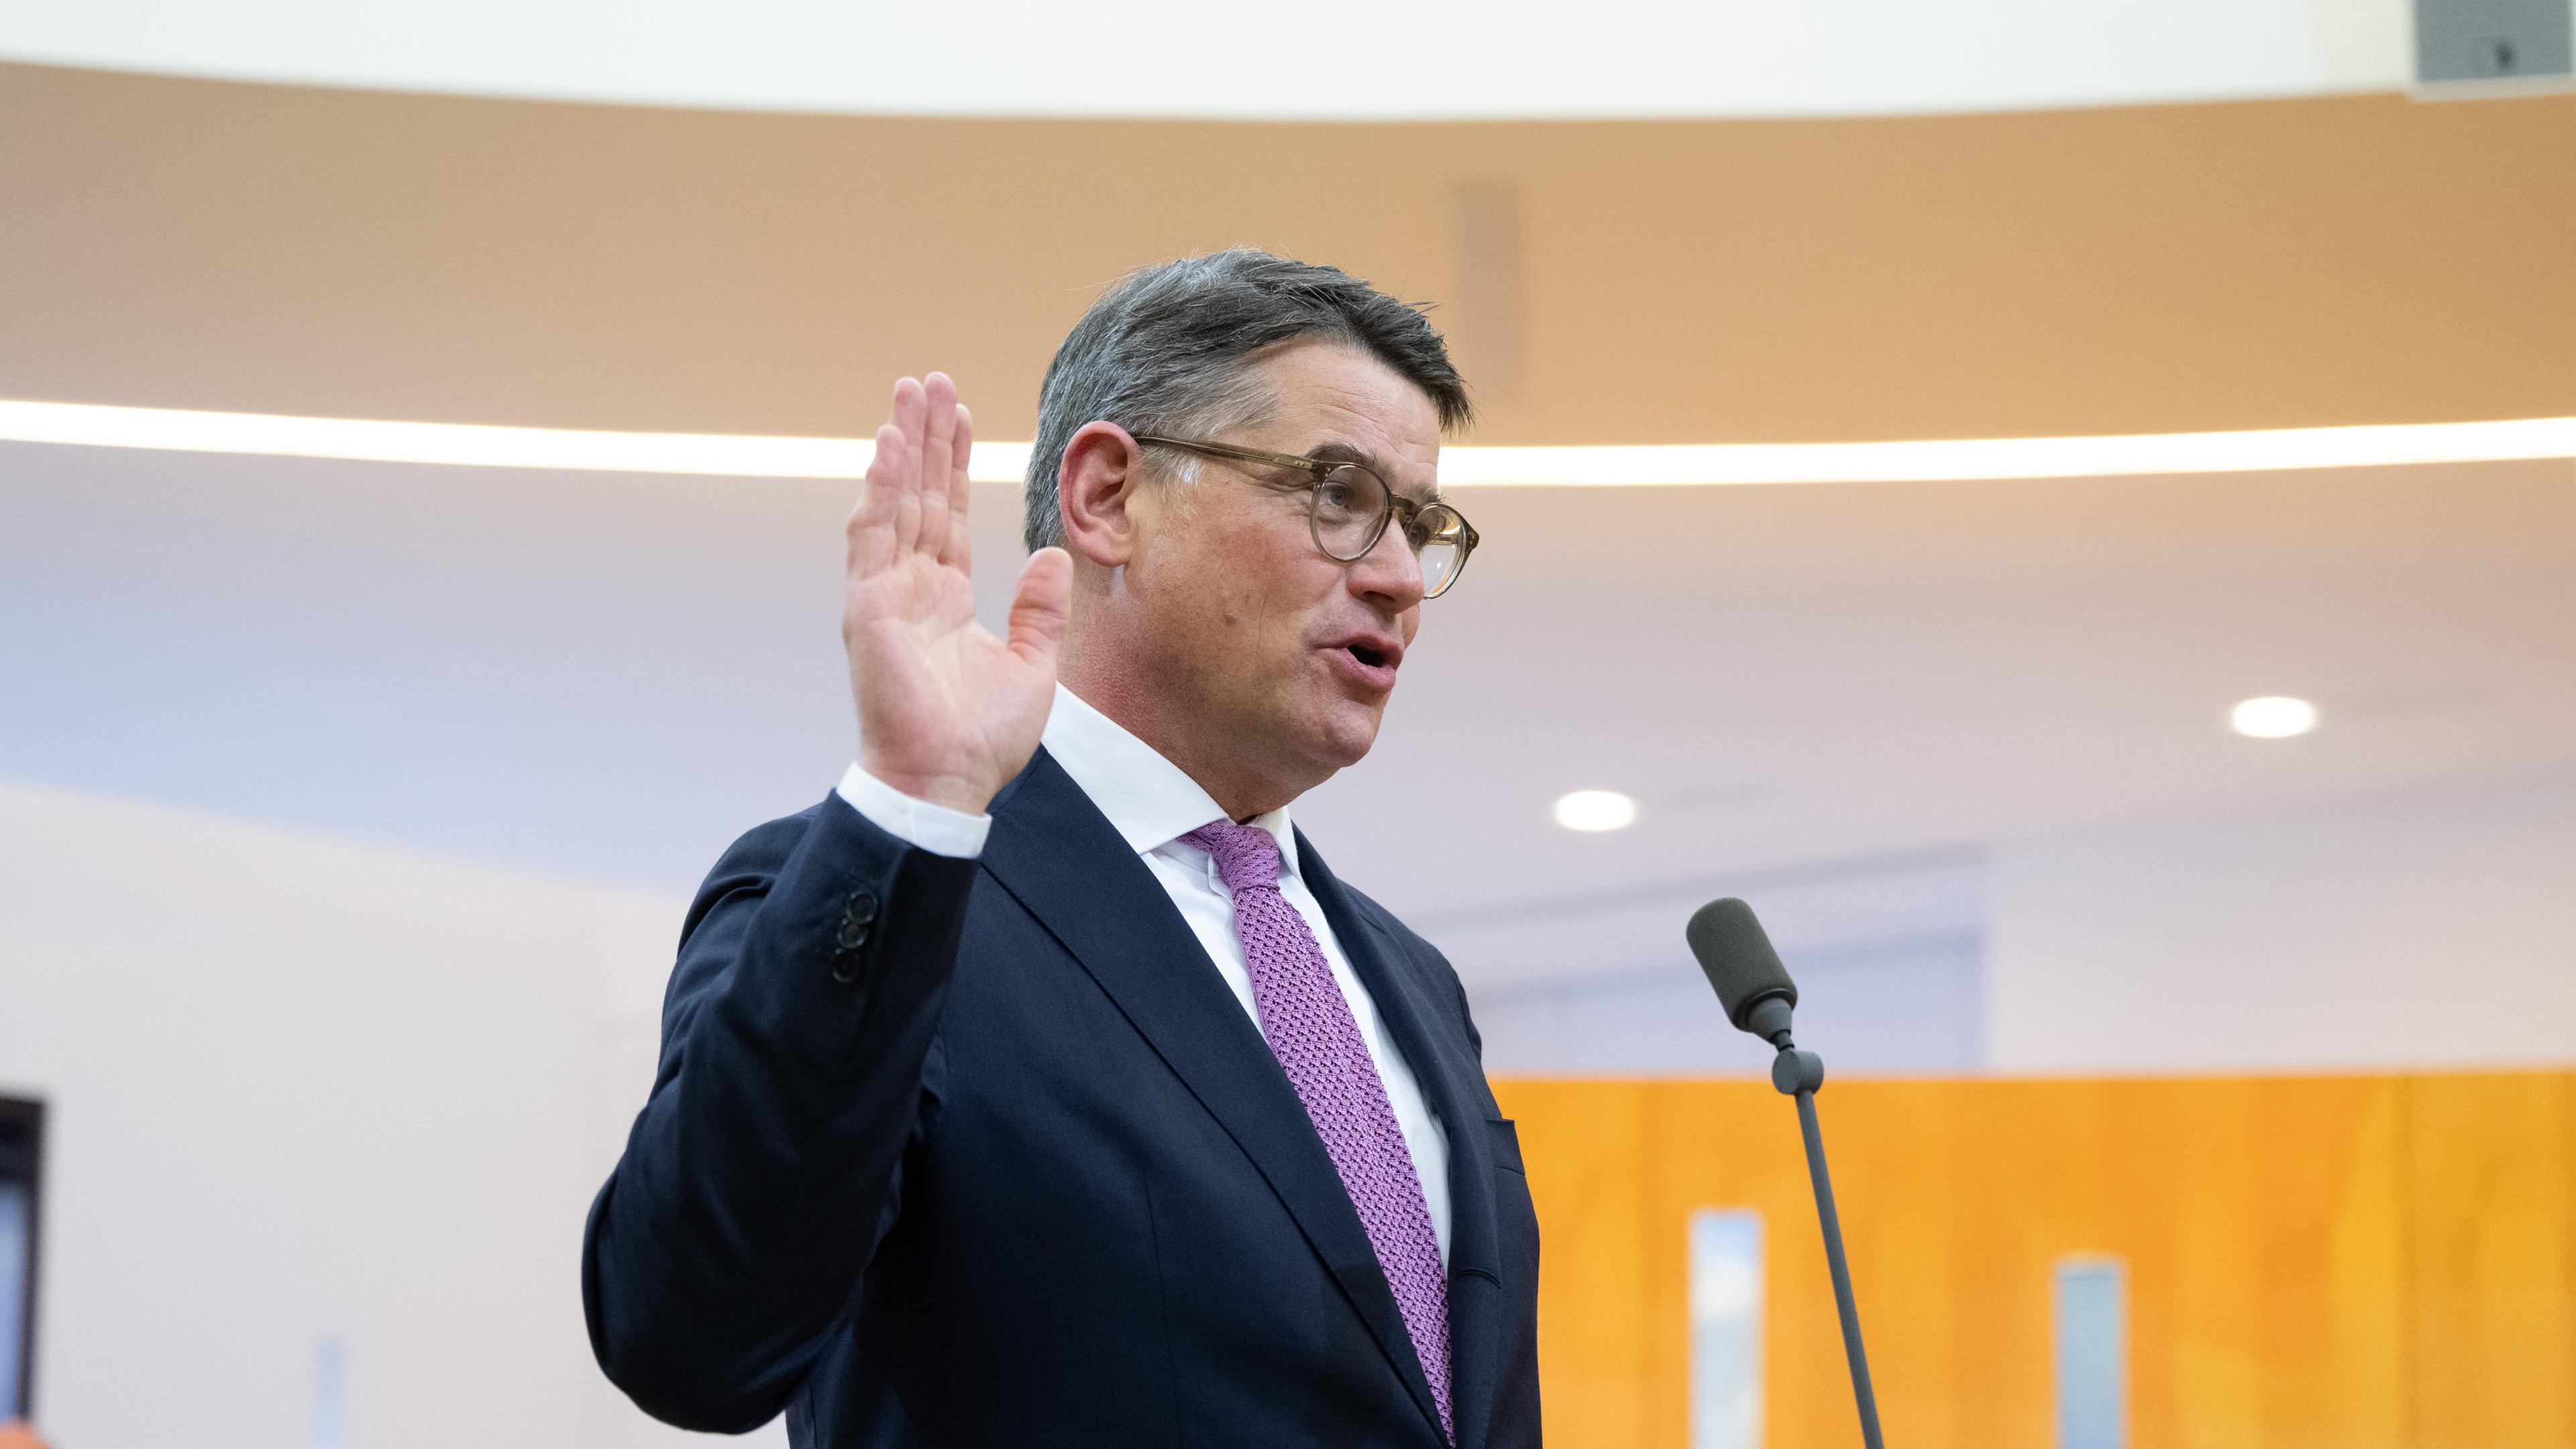 Hessen, Wiesbaden: Boris Rhein (CDU) wird im Landtag in Wiesbaden als neuer Ministerpräsident von Hessen vereidigt.